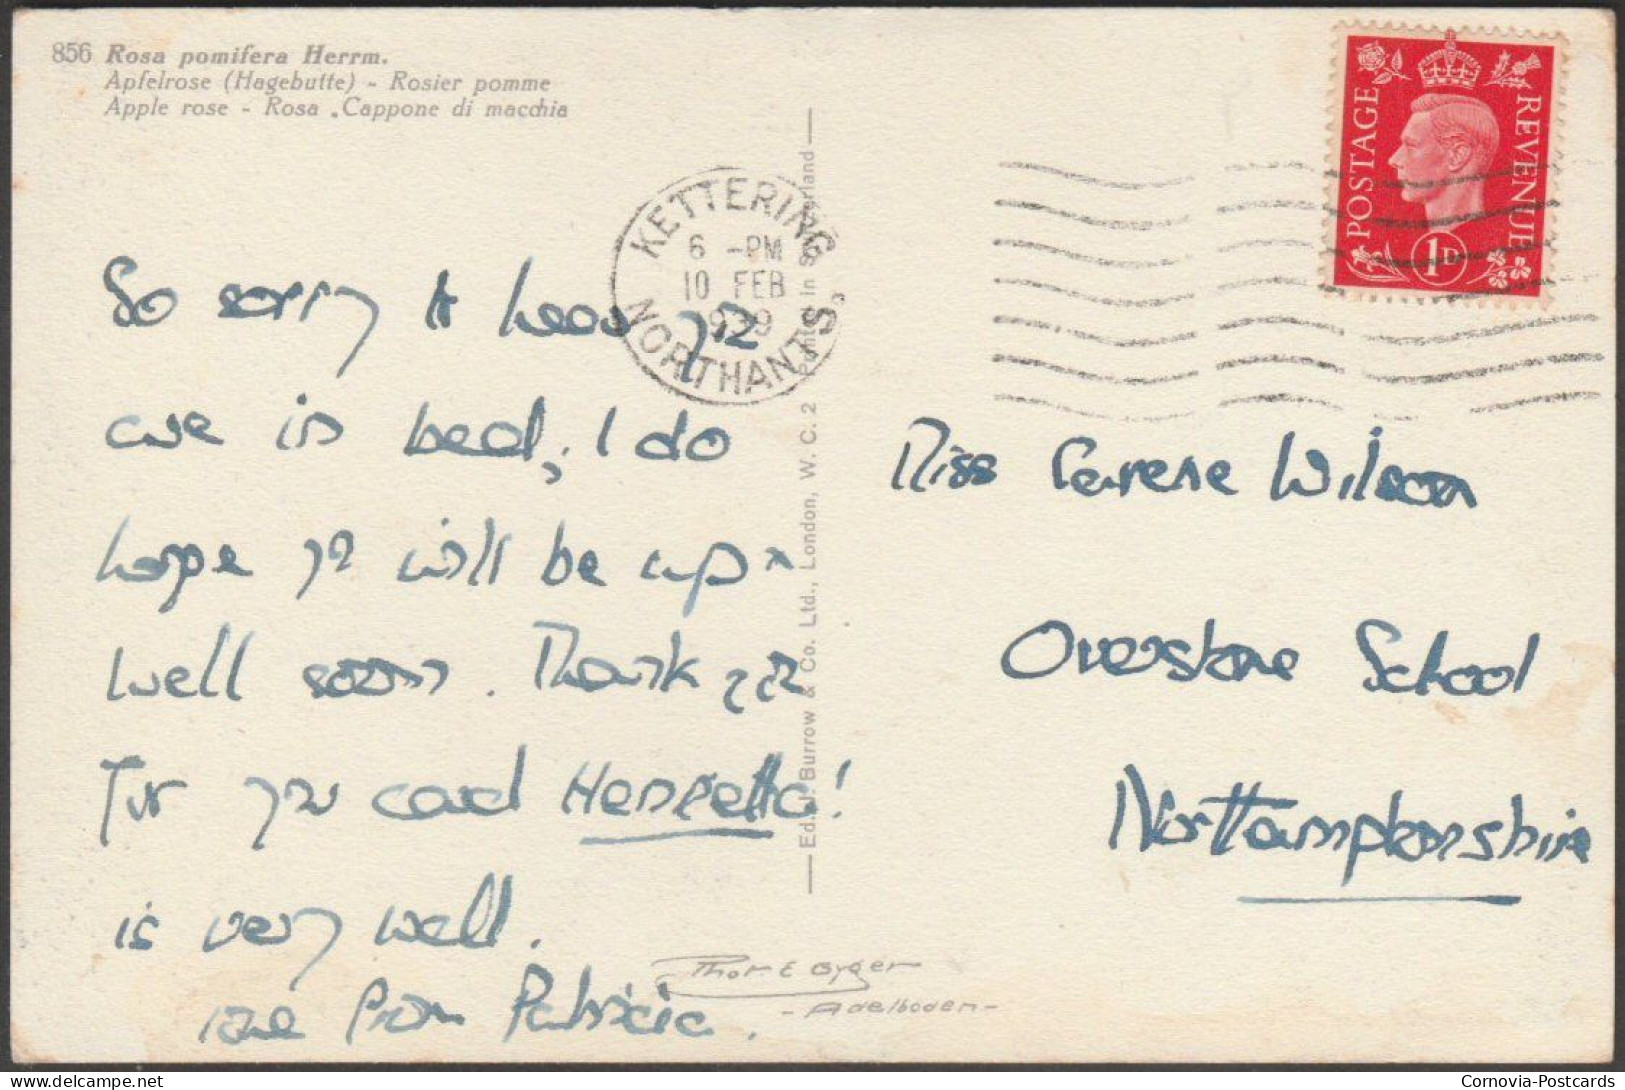 Rosa Pomifera Herrmann, 1939 - Burrow Postcard - Arbres